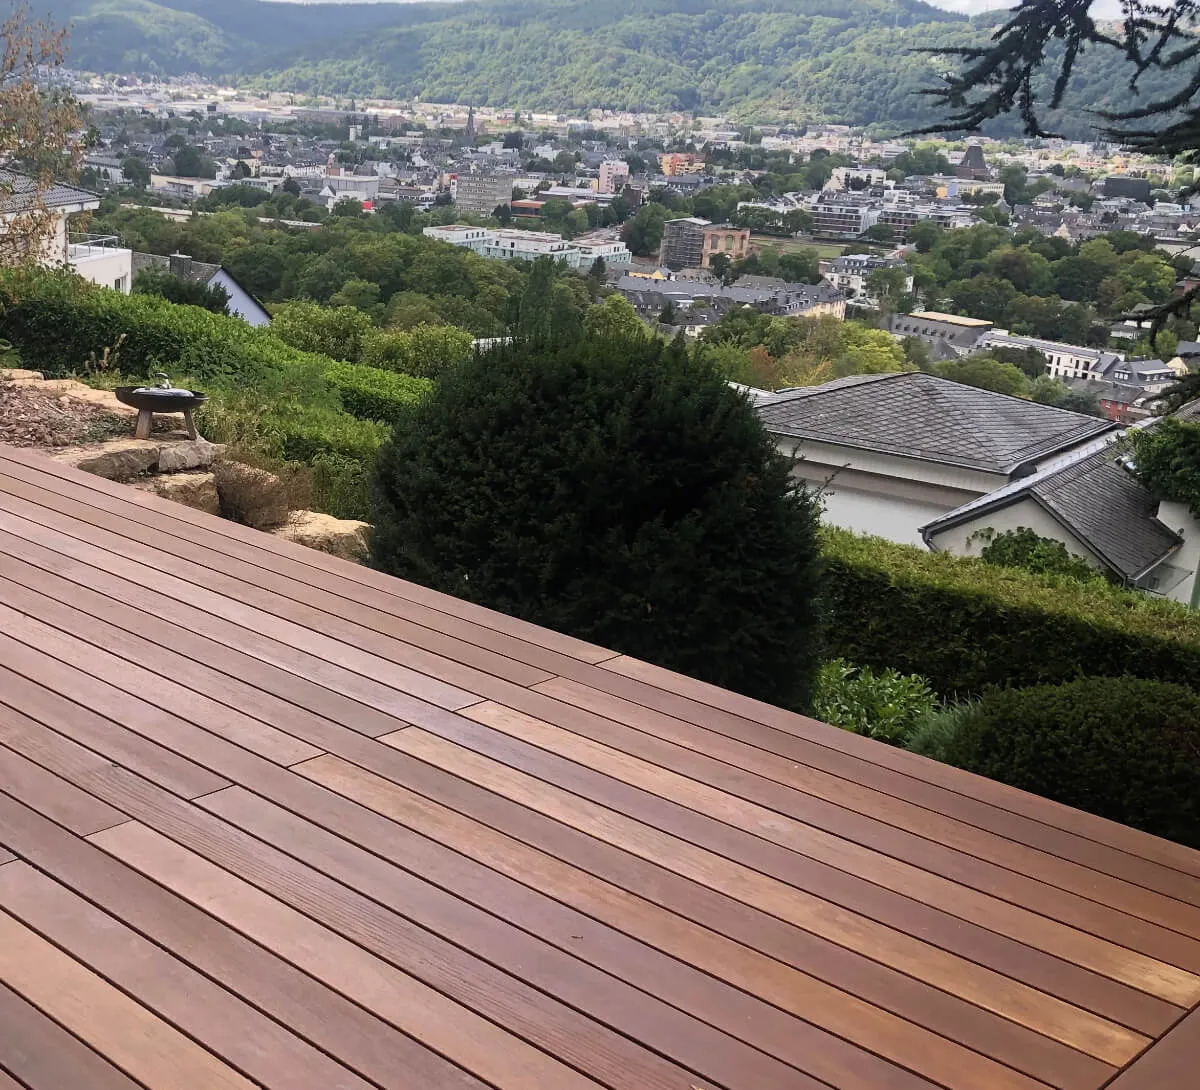 Terrasse mit Holzdielen bauen